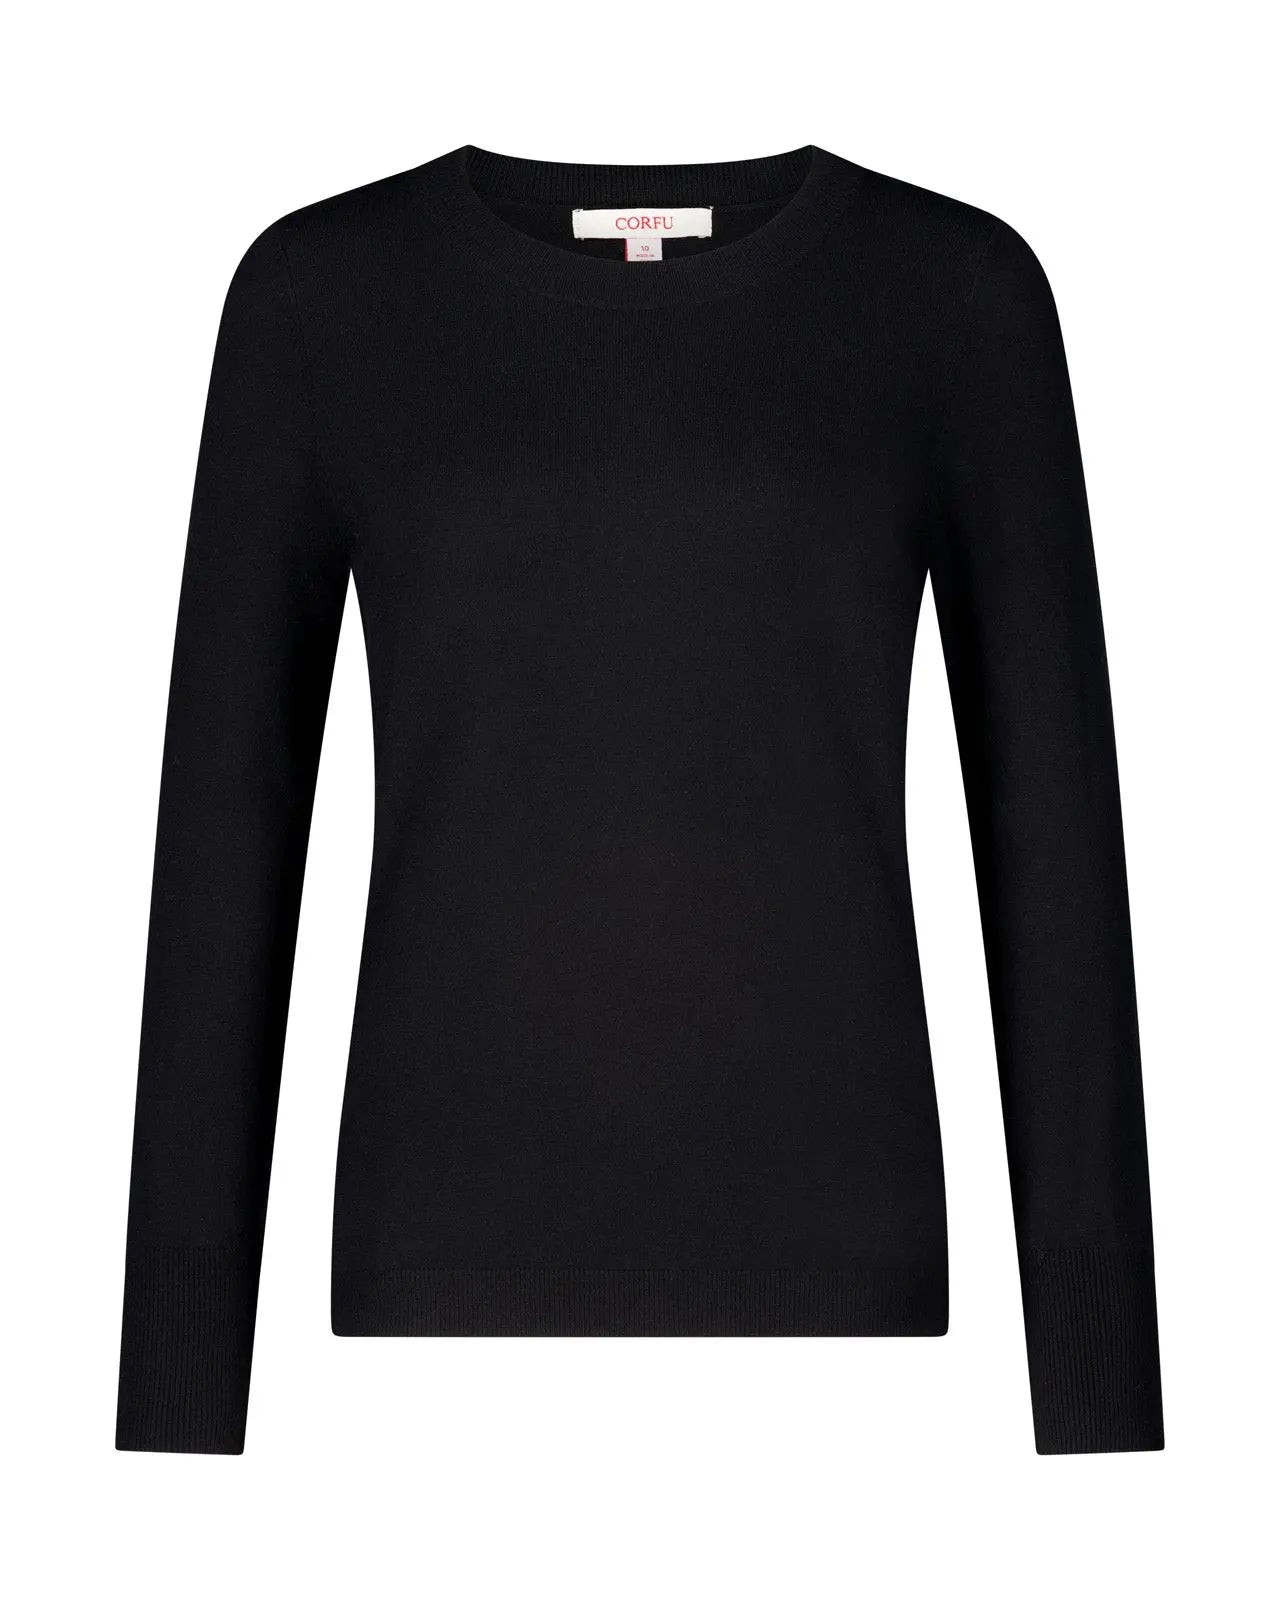 Black Long Sleeve Top | Corfu Jeans